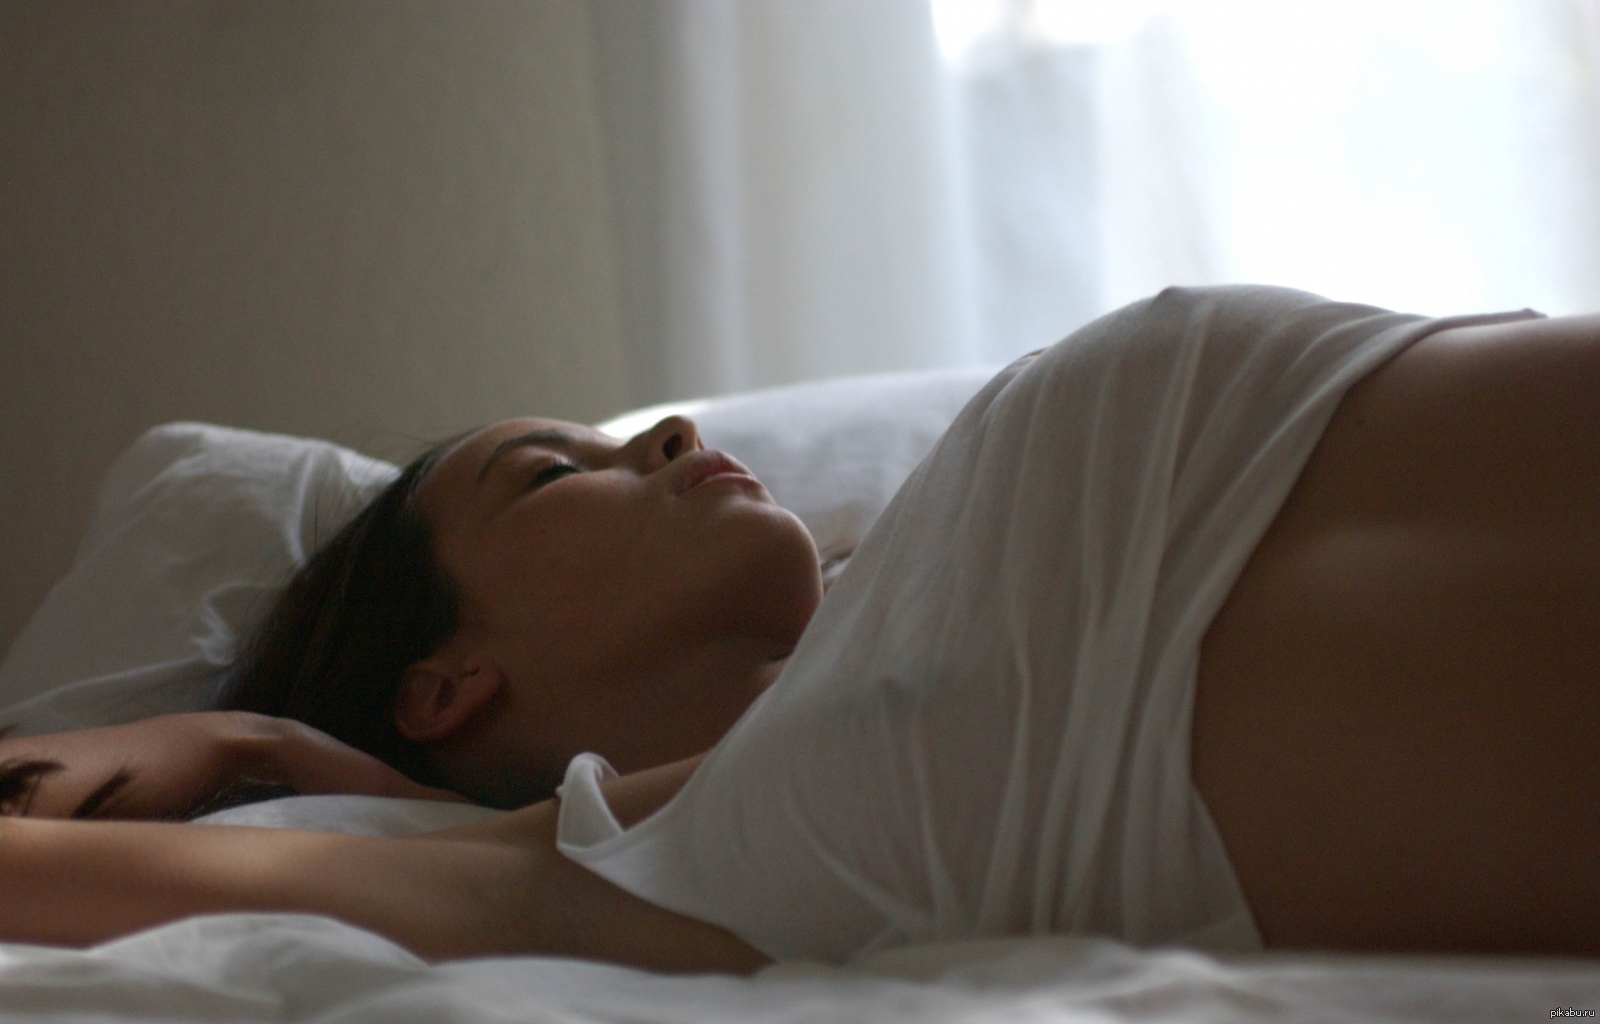 Обаятельная негритянка в любительском видео лёжа в постели балдеет от домашней мастурбации